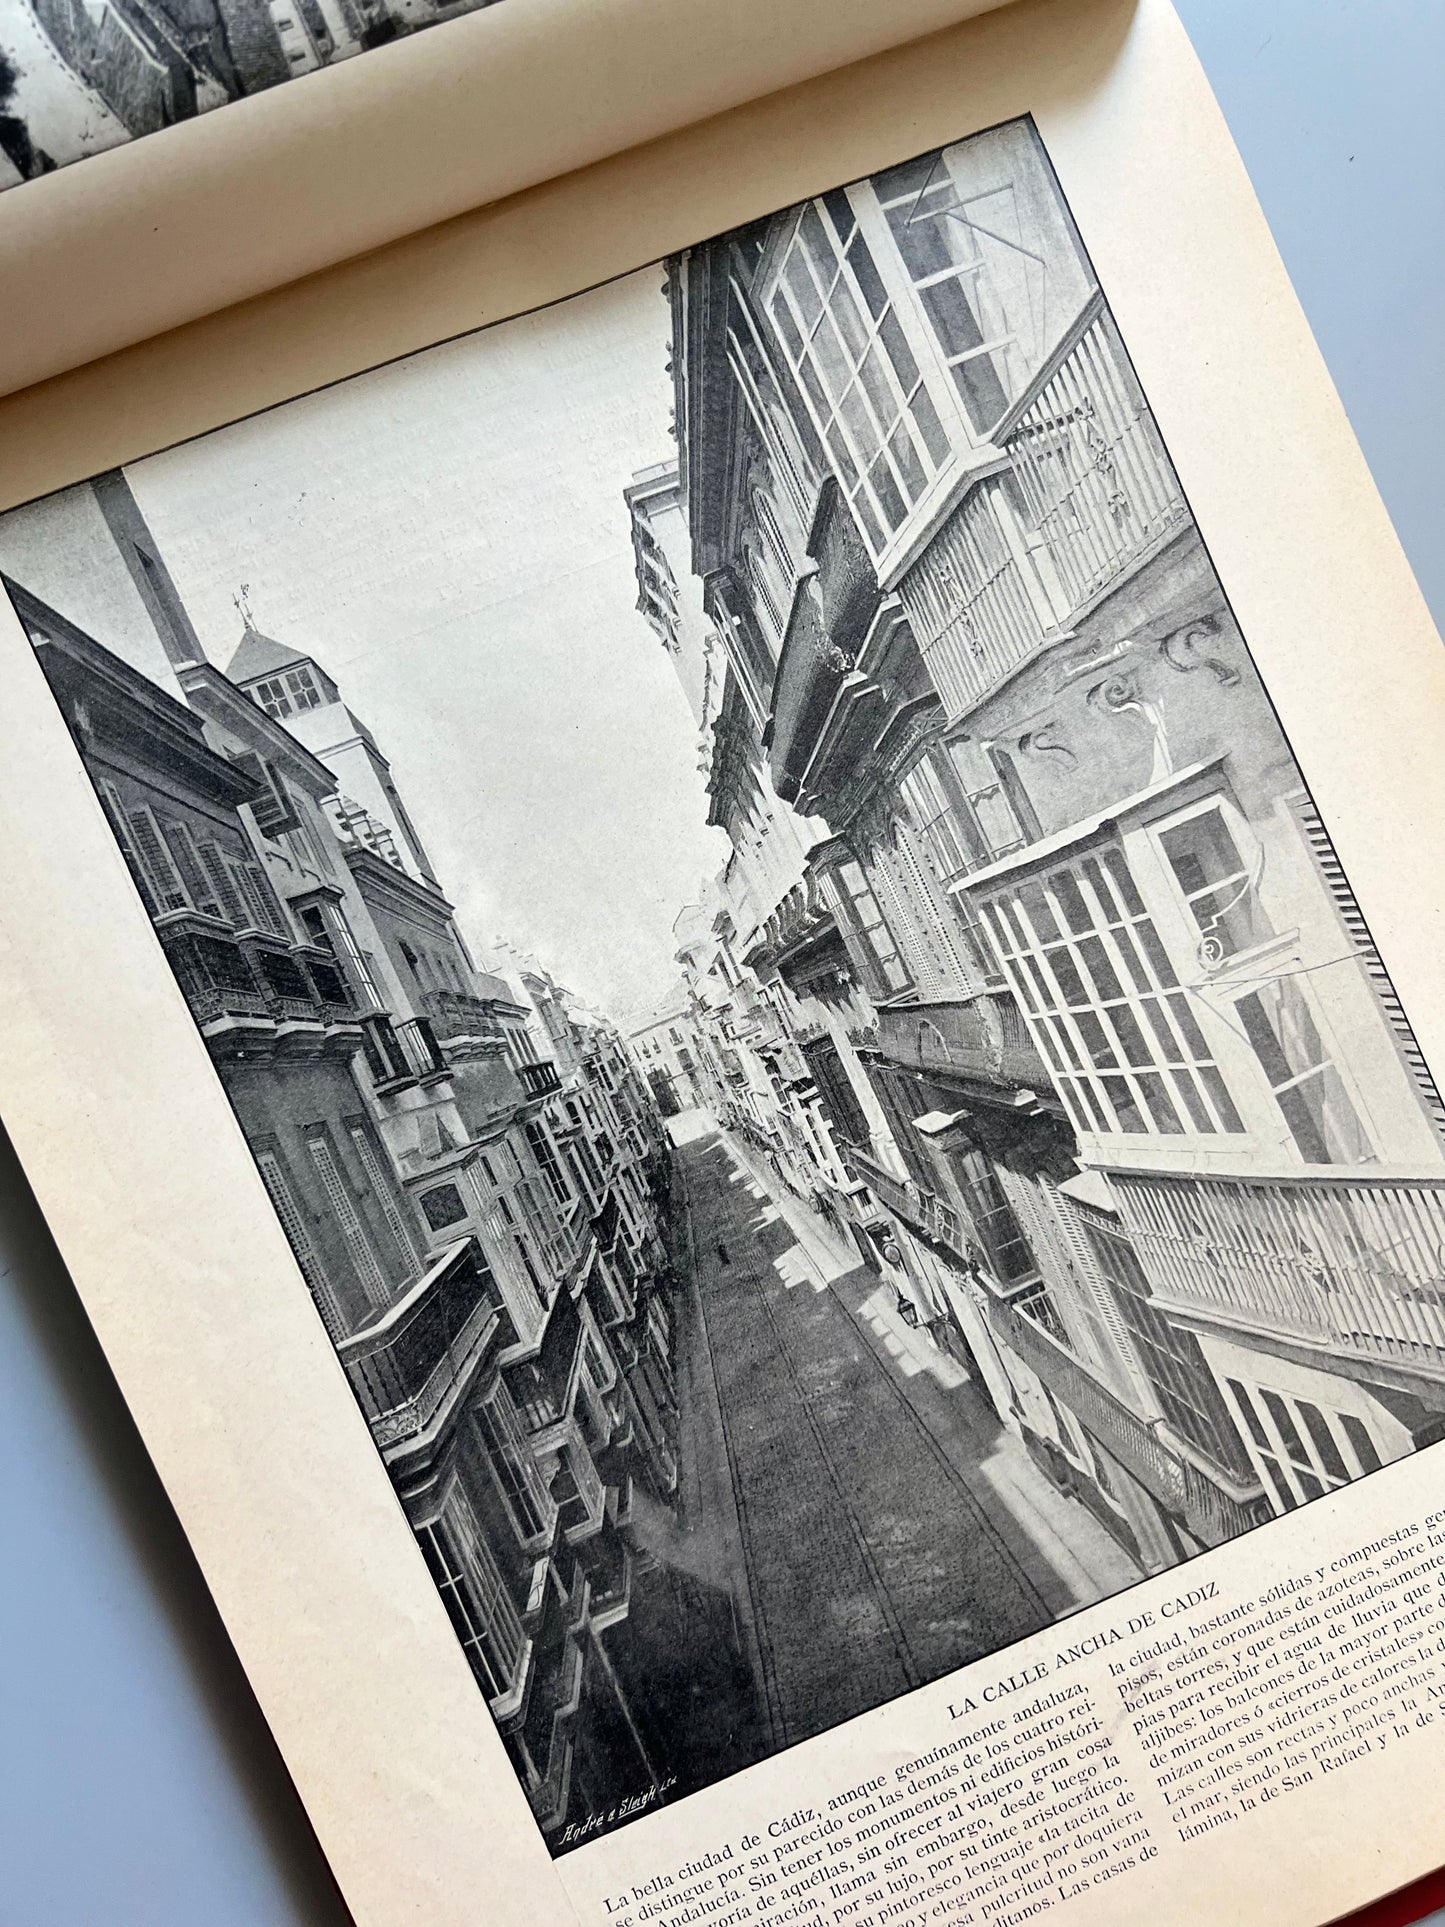 Panorama nacional, escogidísima colección de láminas reproducción fiel de esmeradas fotografías - Hermenegildo Miralles, editor, litógrafo y encuadernador, 1896